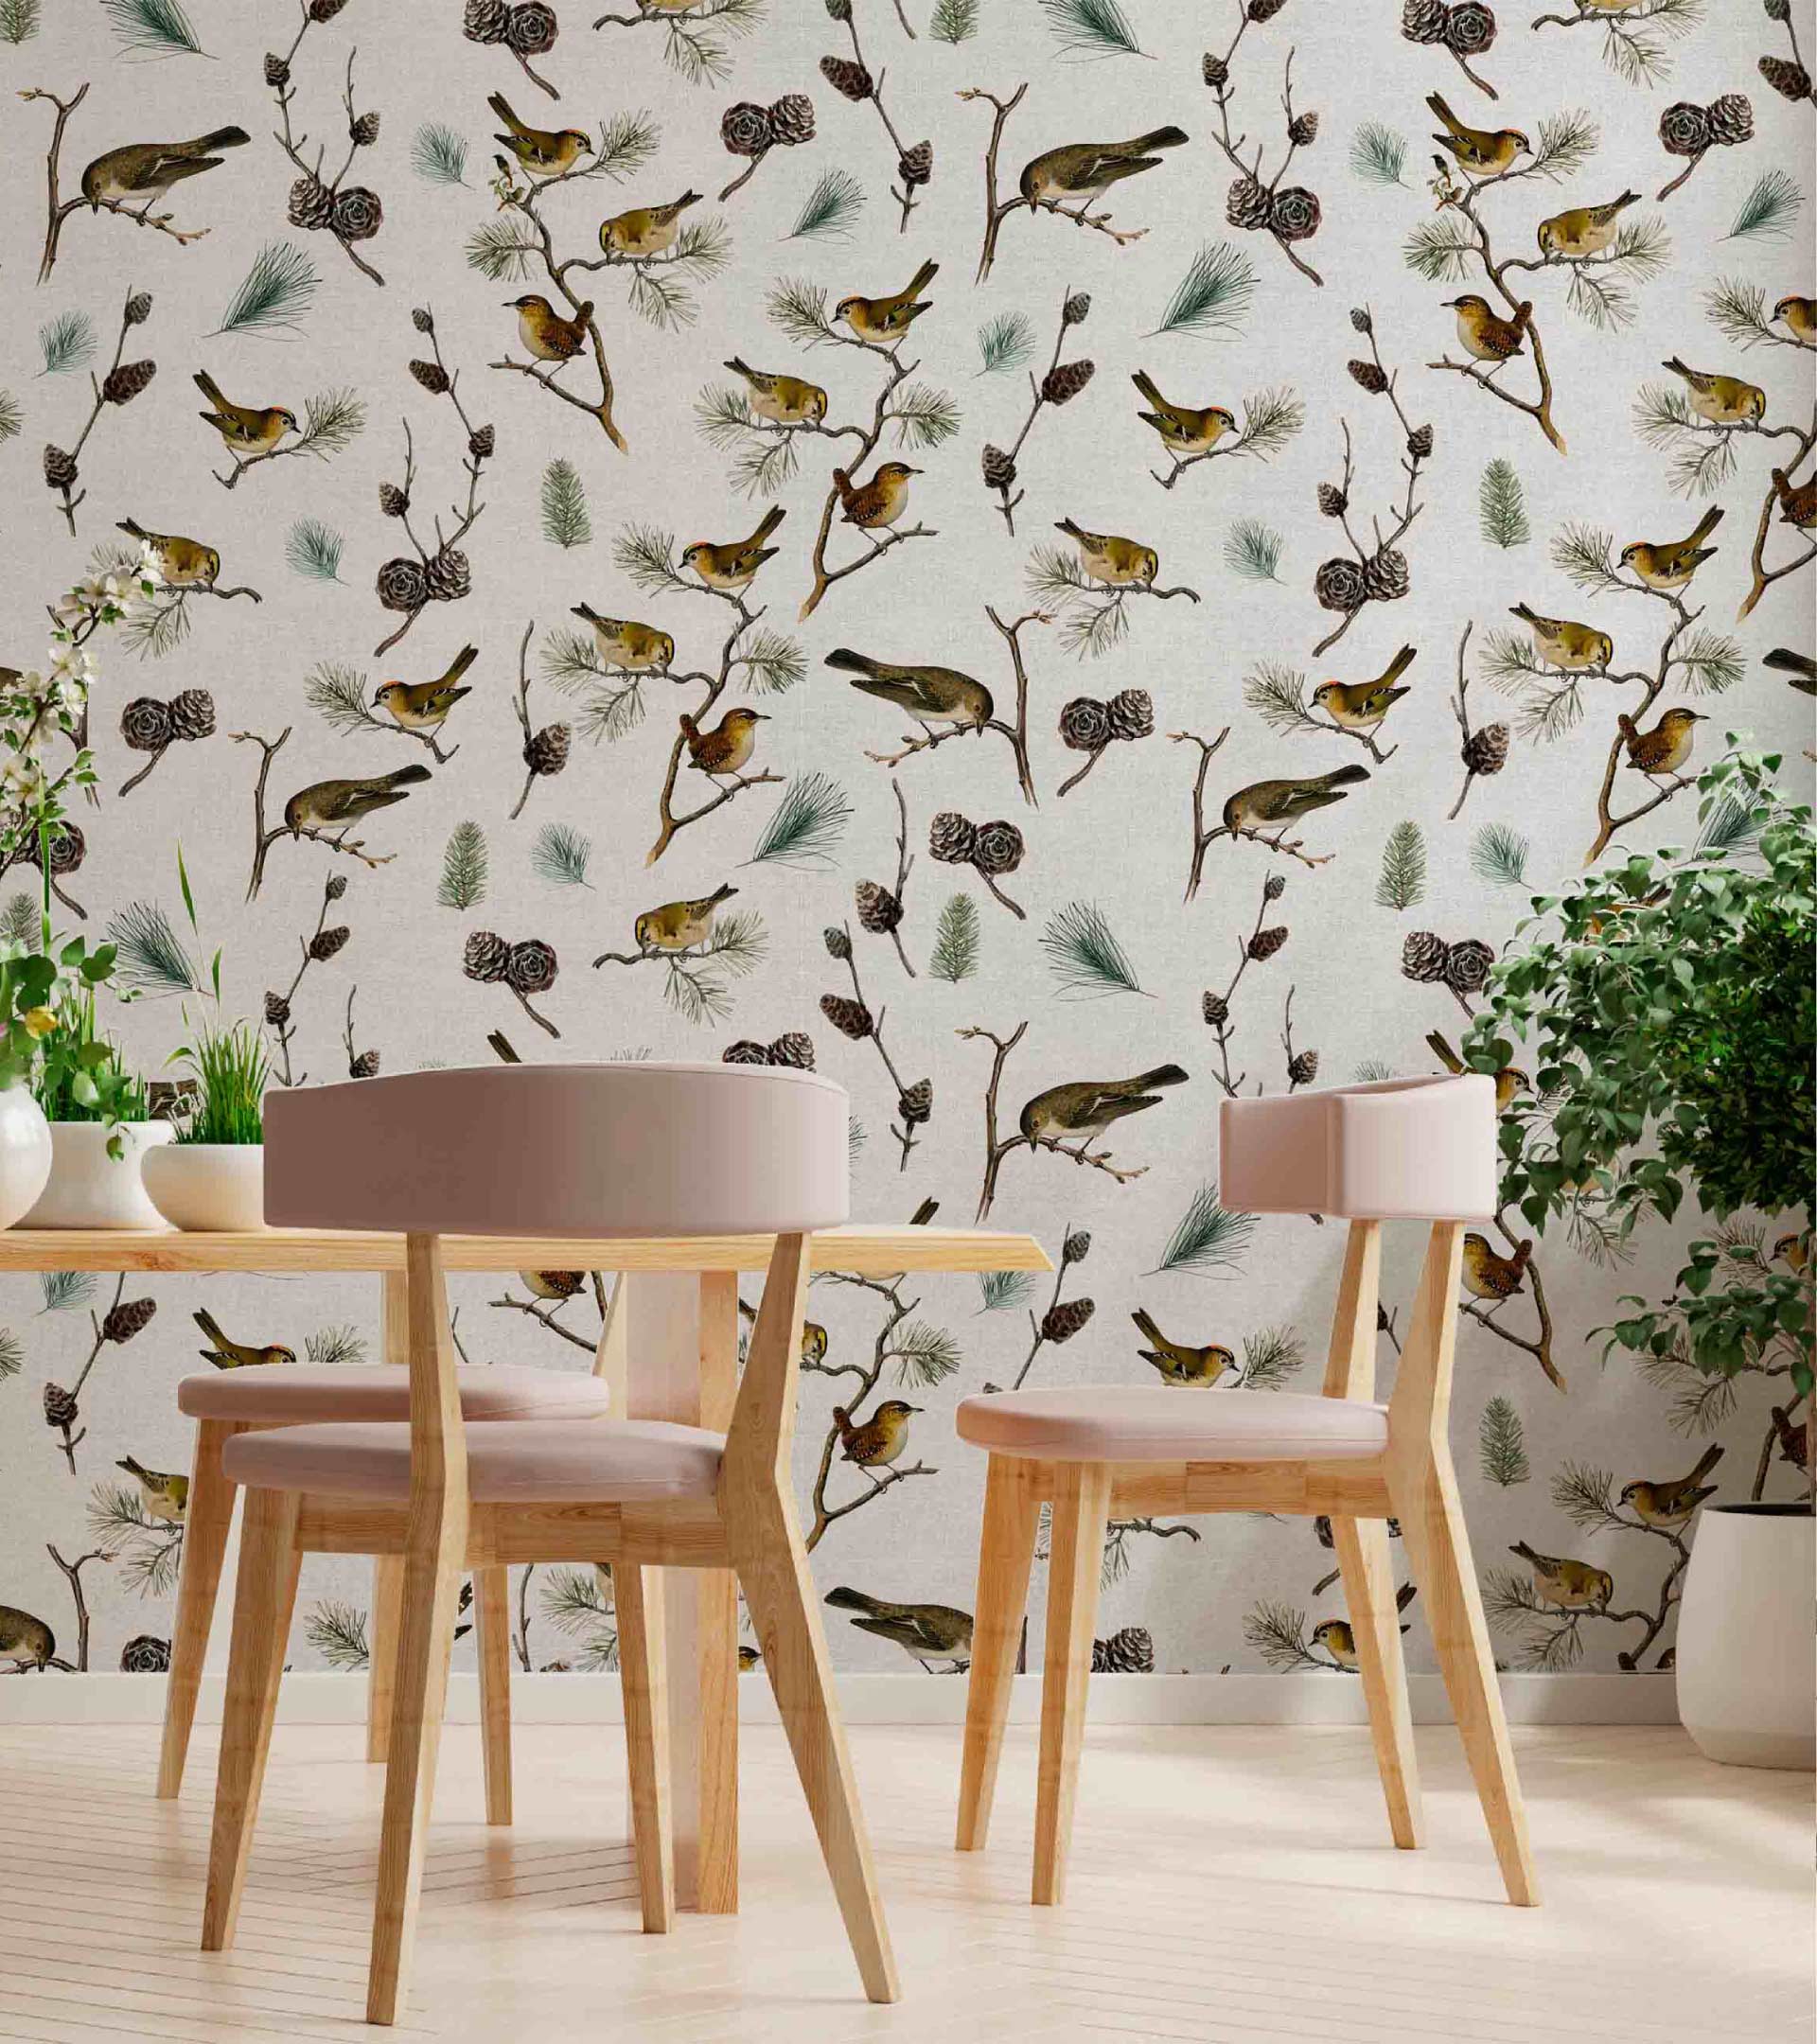 Empapelado colocado de diseño con distintas aves, hojas y ramas de pino. Fondo con textura simil lino crudo.